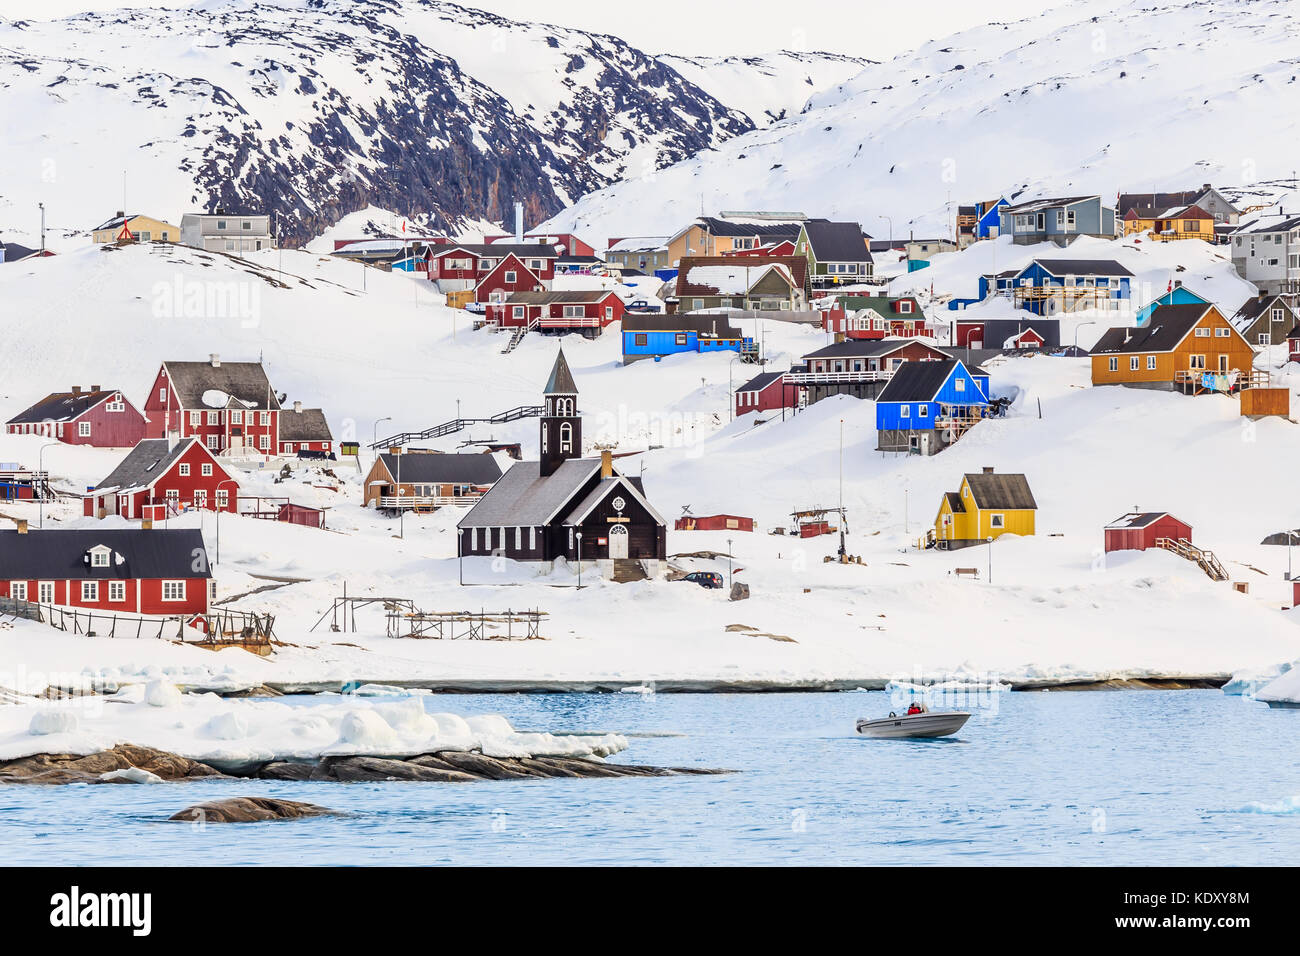 Insediamento artico con coloratissime case inuit sulle colline rocciose coperte di neve con la neve e la montagna in background, ilulissat Foto Stock